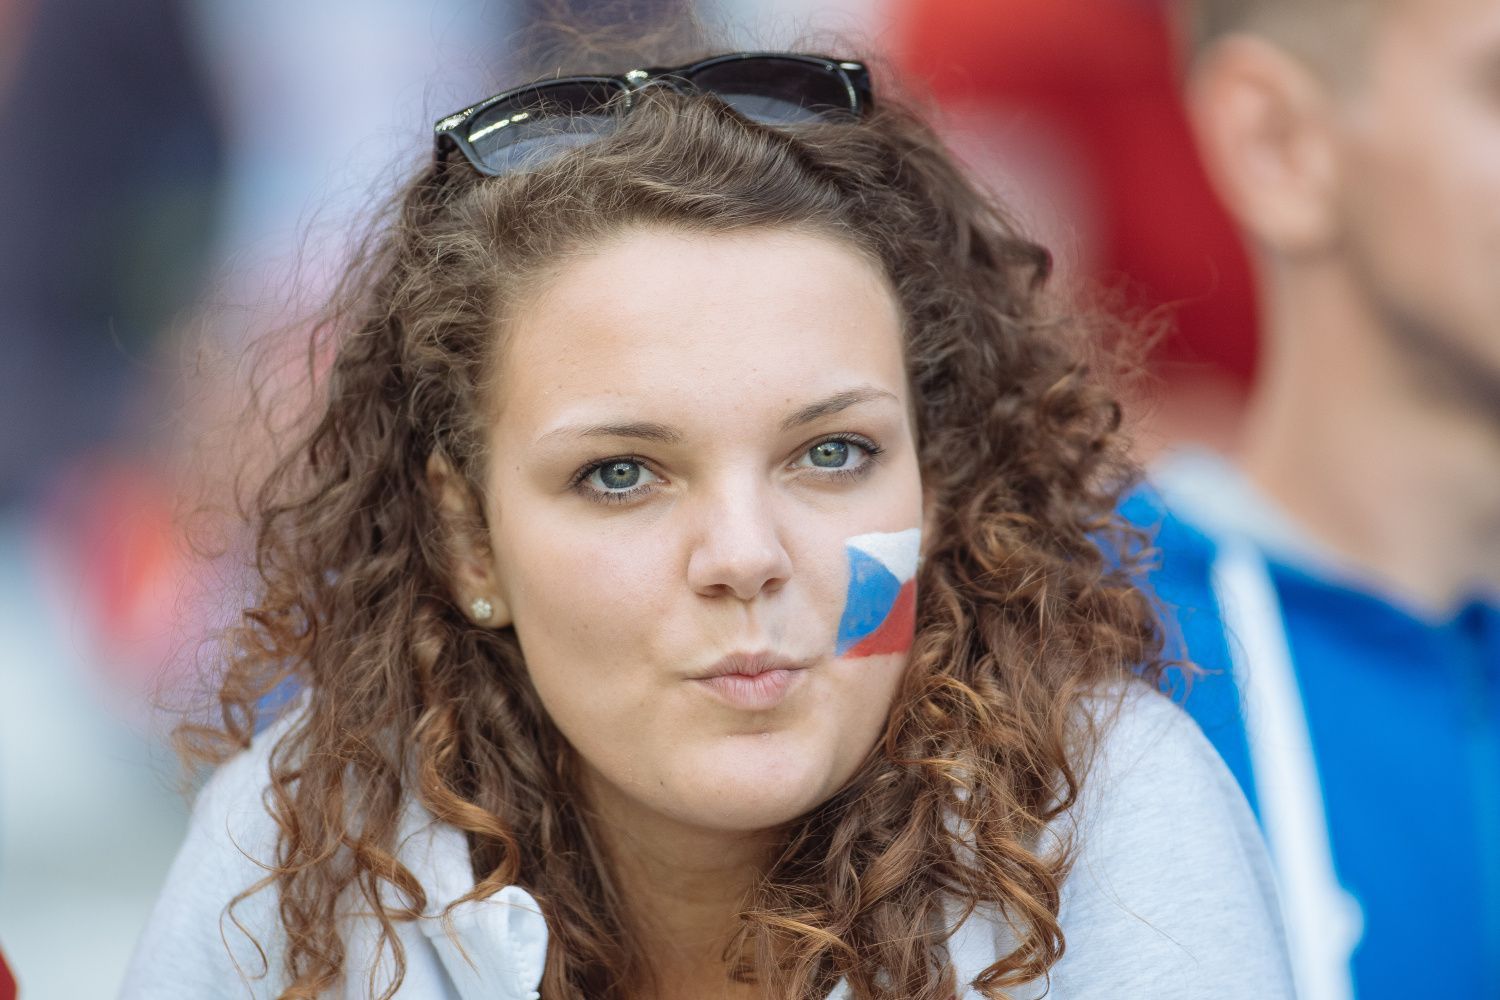 Euro 2016, Česko-Turecko: čeští fanoušci